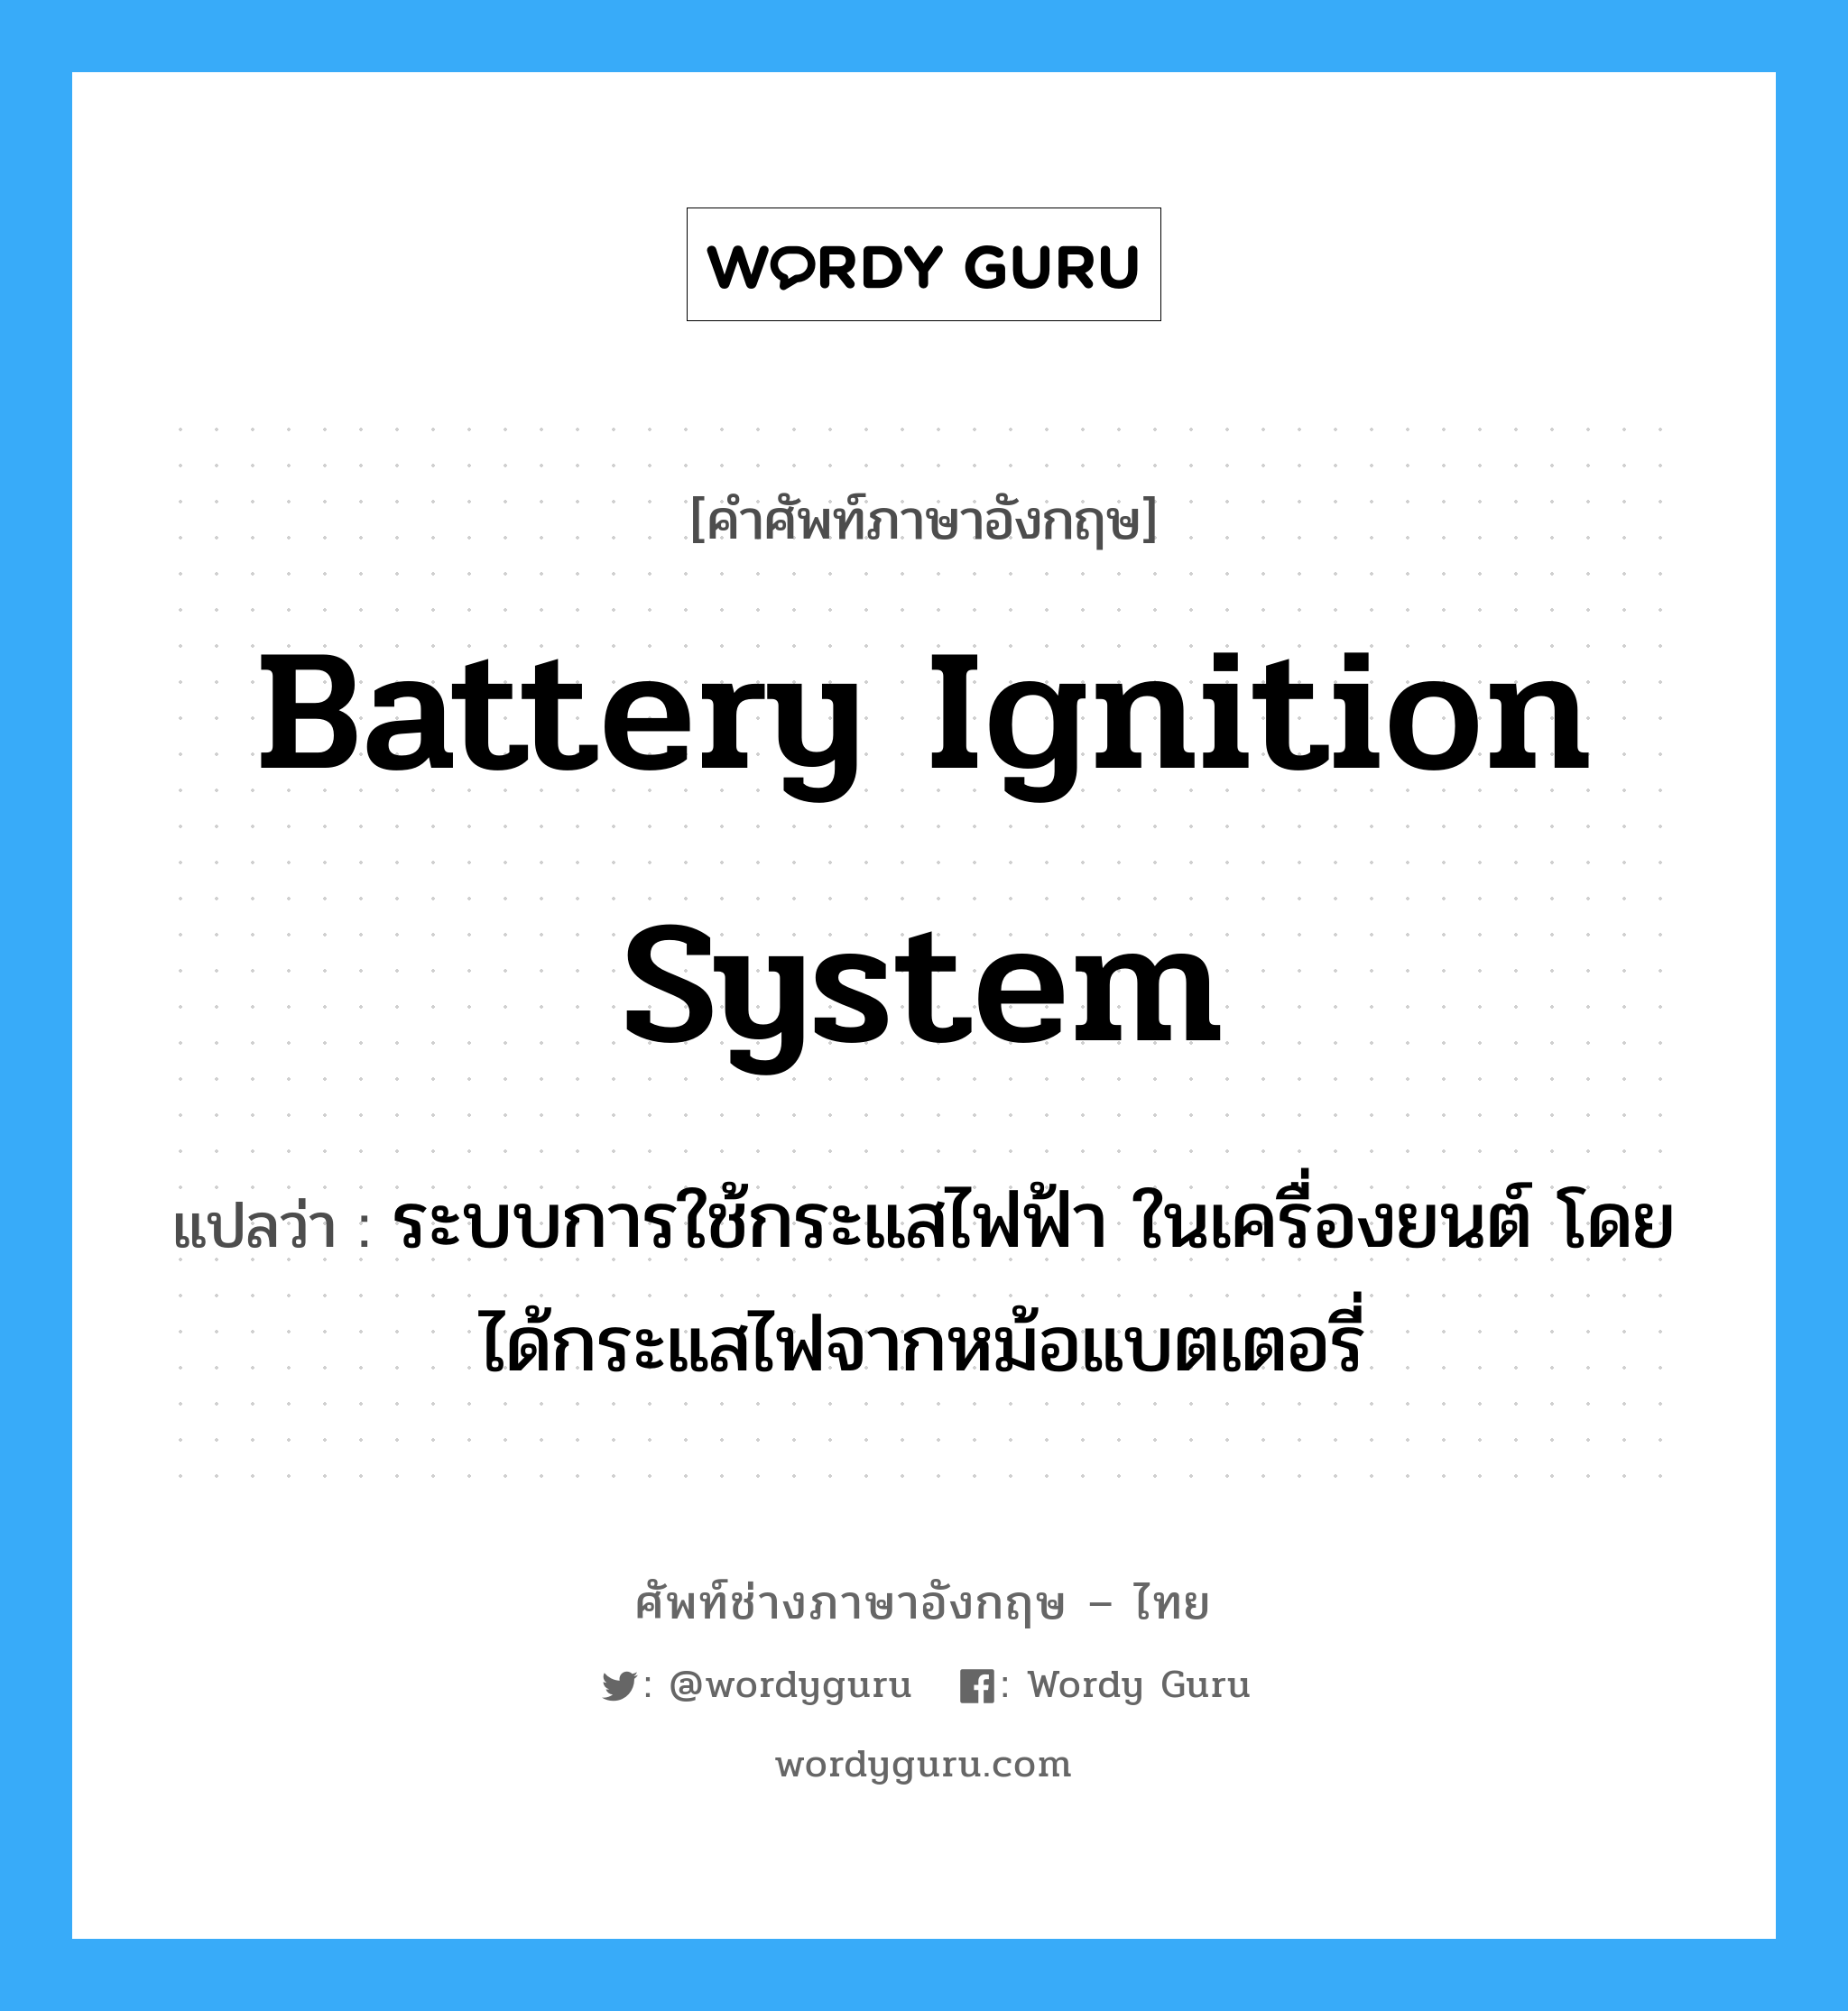 battery ignition system แปลว่า?, คำศัพท์ช่างภาษาอังกฤษ - ไทย battery ignition system คำศัพท์ภาษาอังกฤษ battery ignition system แปลว่า ระบบการใช้กระแสไฟฟ้า ในเครื่องยนต์ โดยได้กระแสไฟจากหม้อแบตเตอรี่